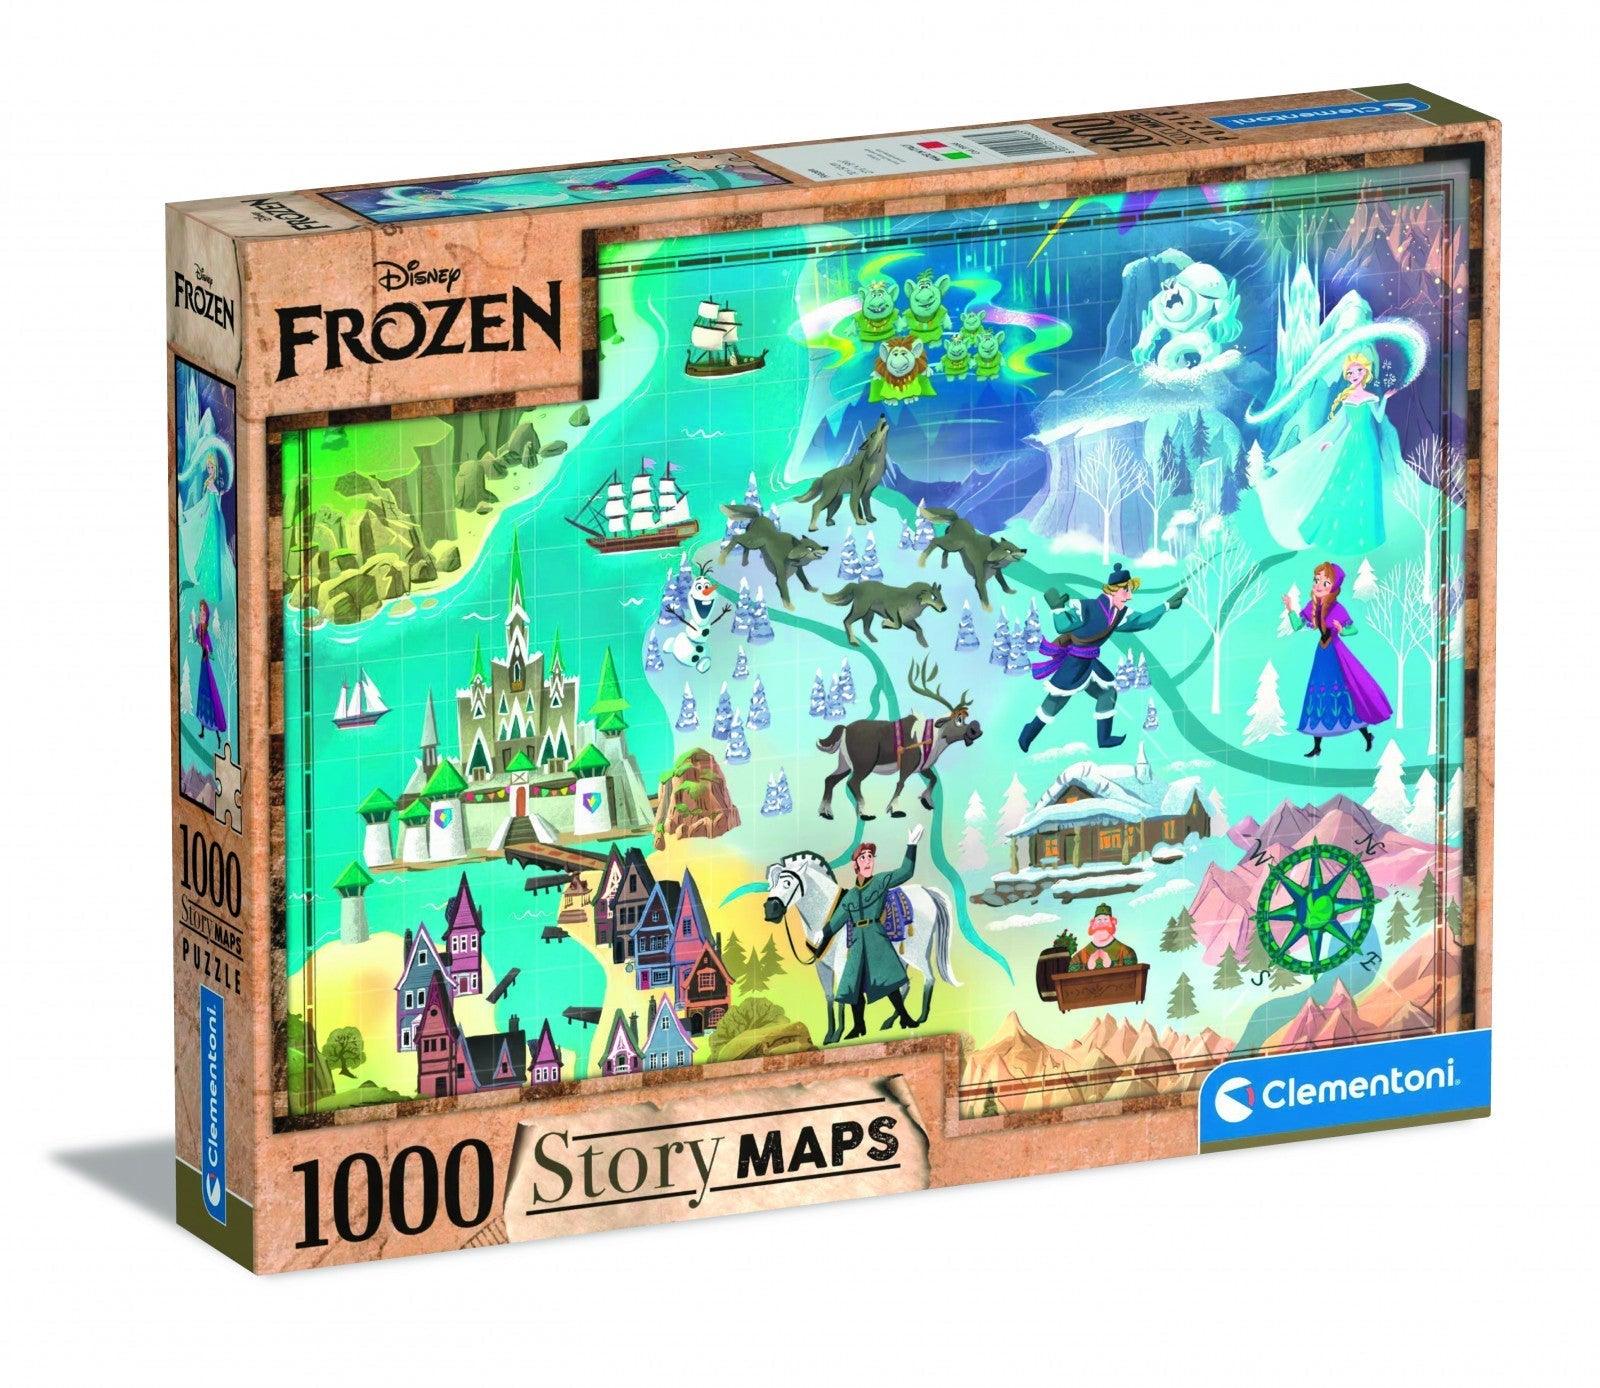 VR-97672 Clementoni Puzzle Frozen Story Maps 1000 pieces - Clementoni - Titan Pop Culture